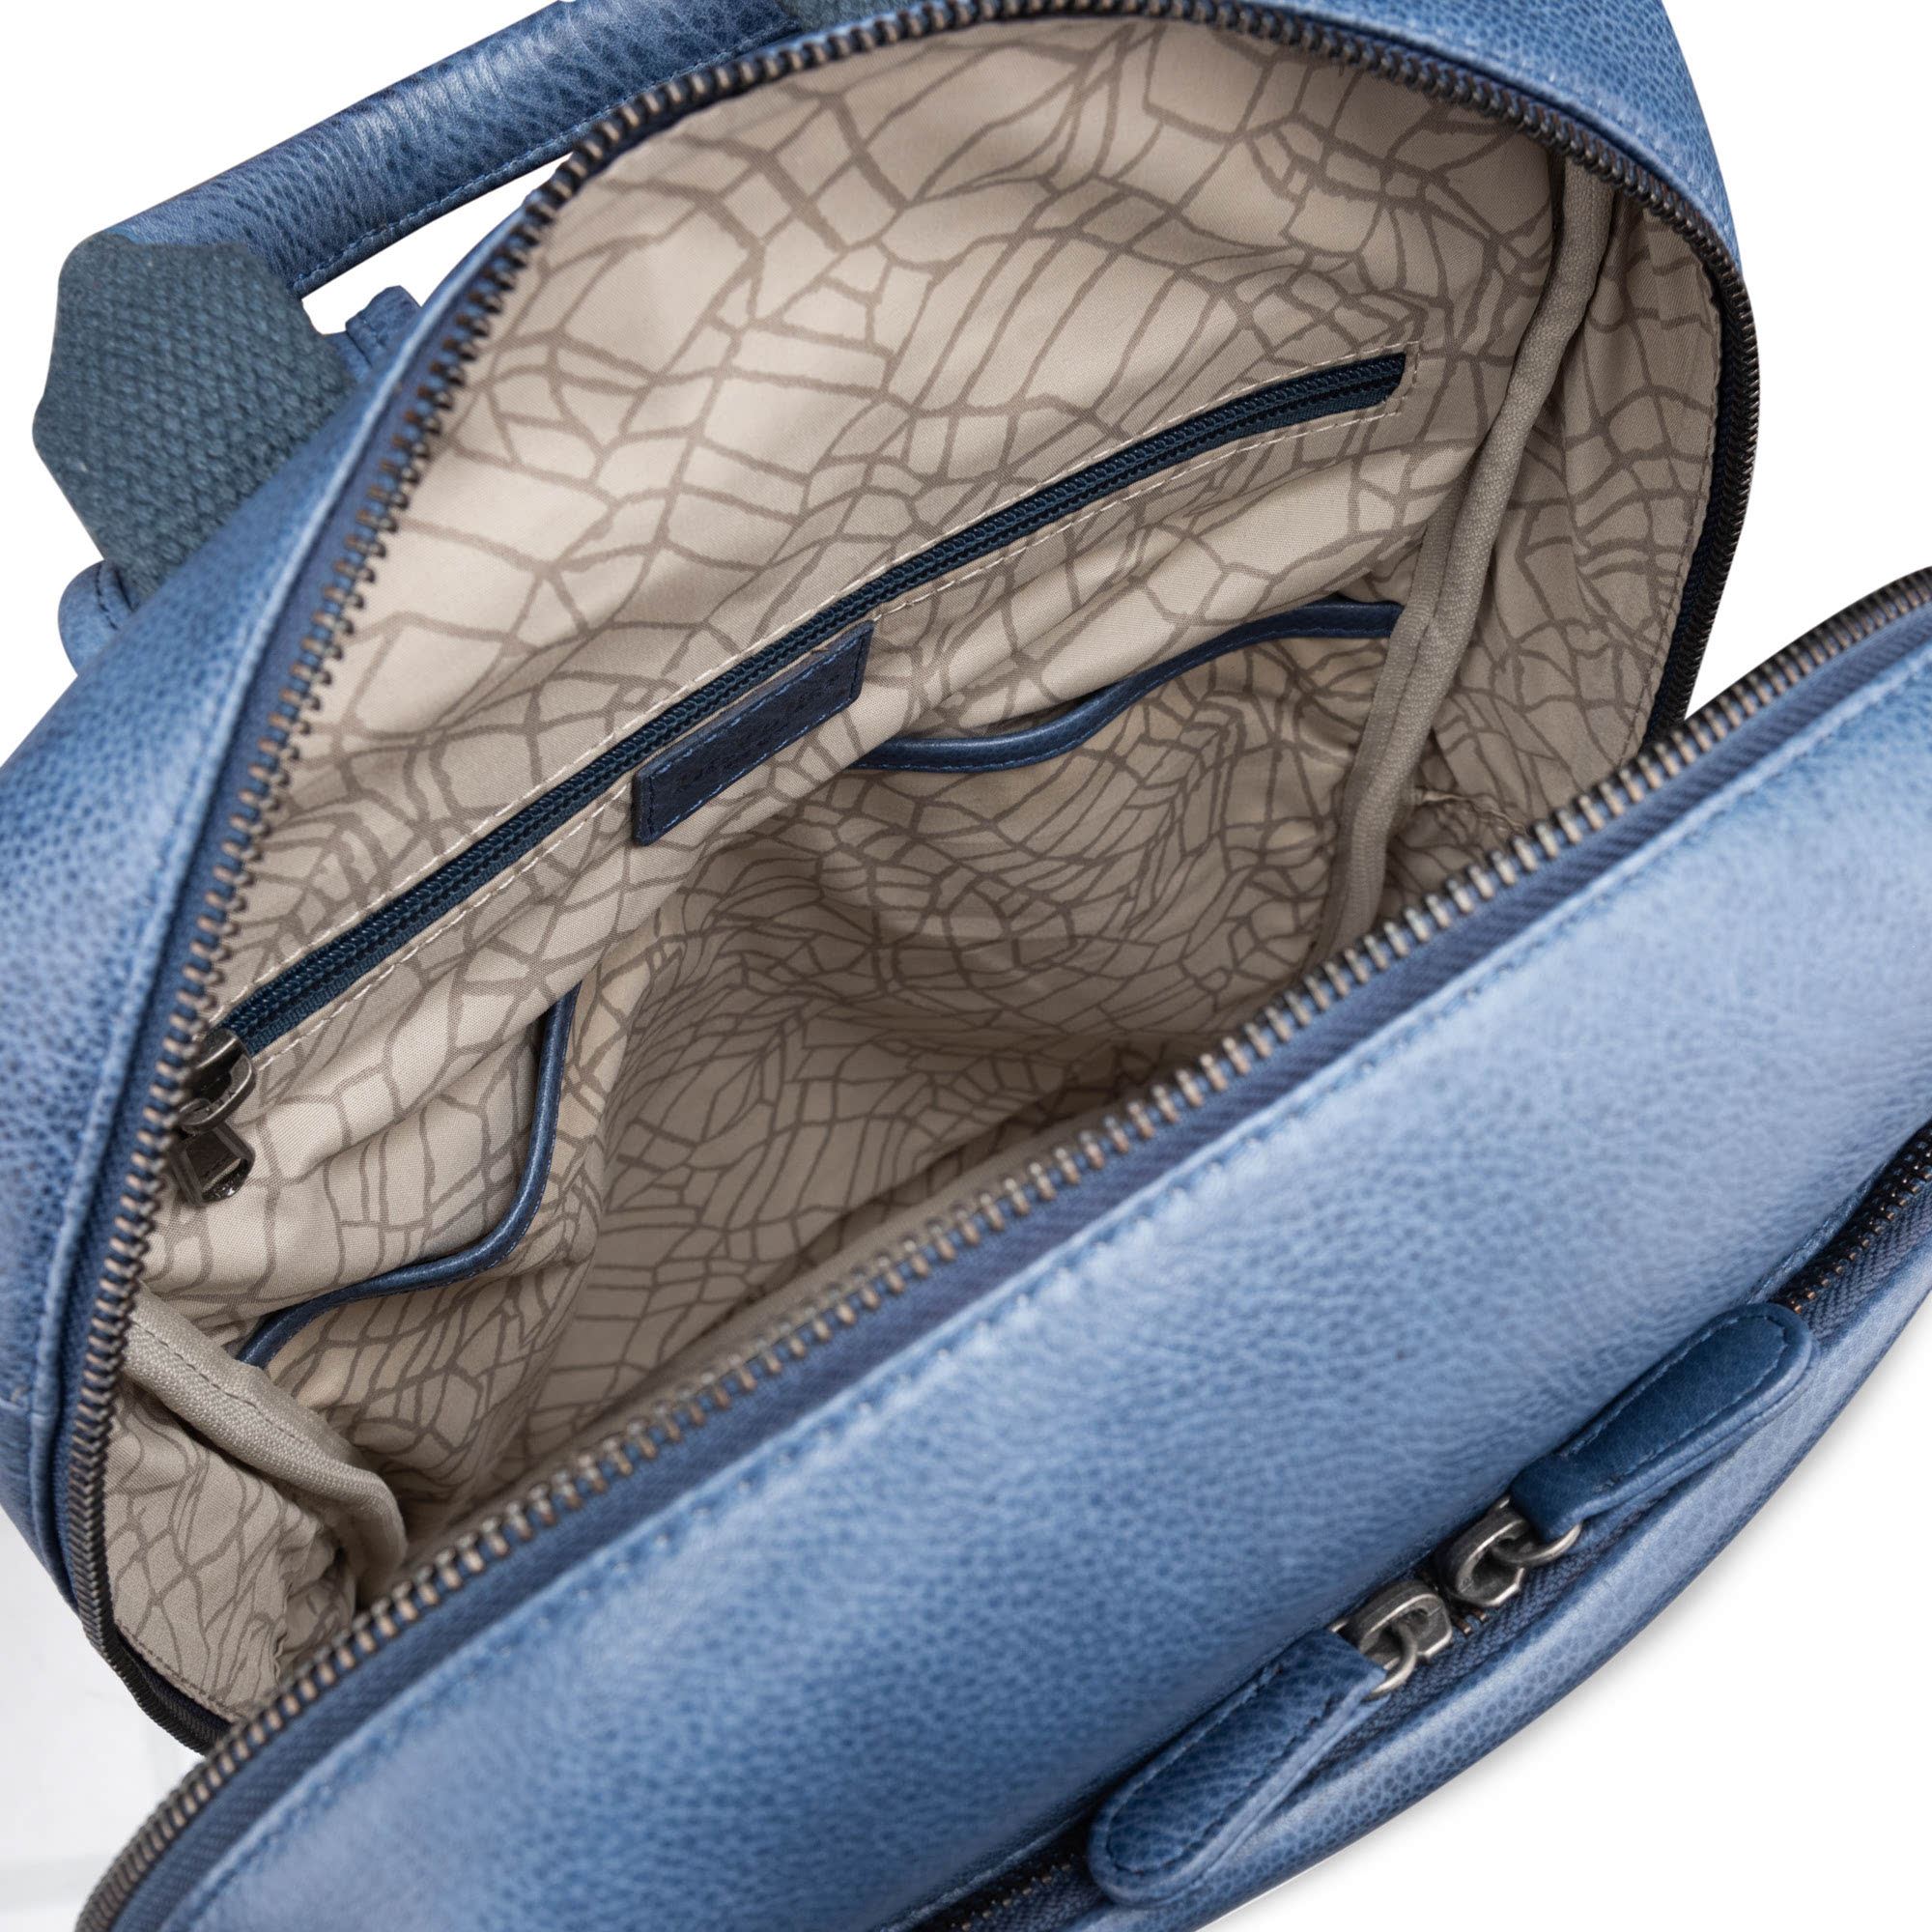 Др.Коффер B402691-154-60 рюкзак, цвет синий - фото 5